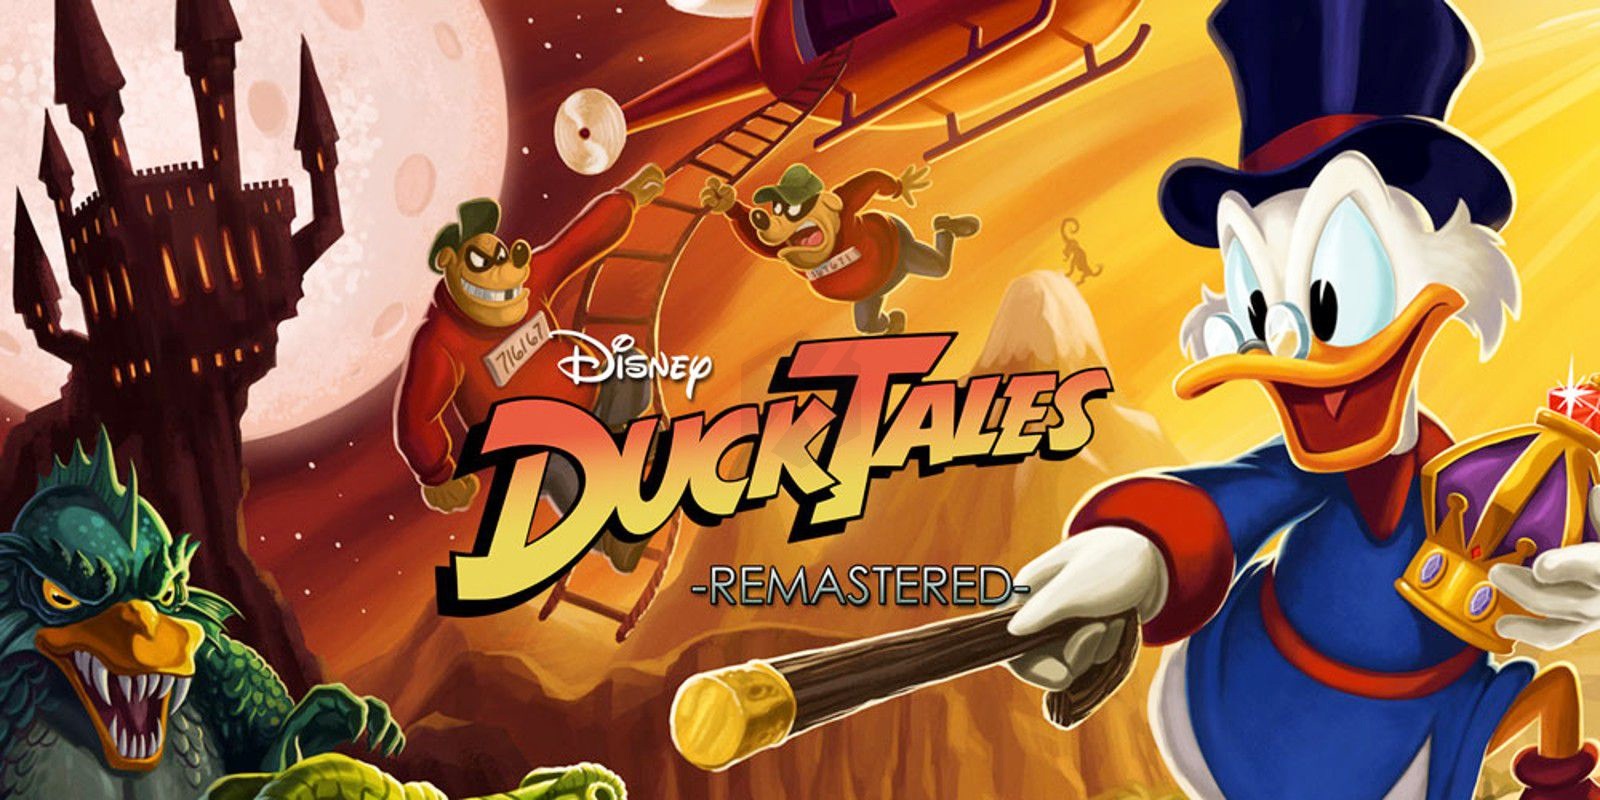 DuckTales: Remastered прохождение № 1 # ретро игры по новому # по мотивам любимого мультфильма